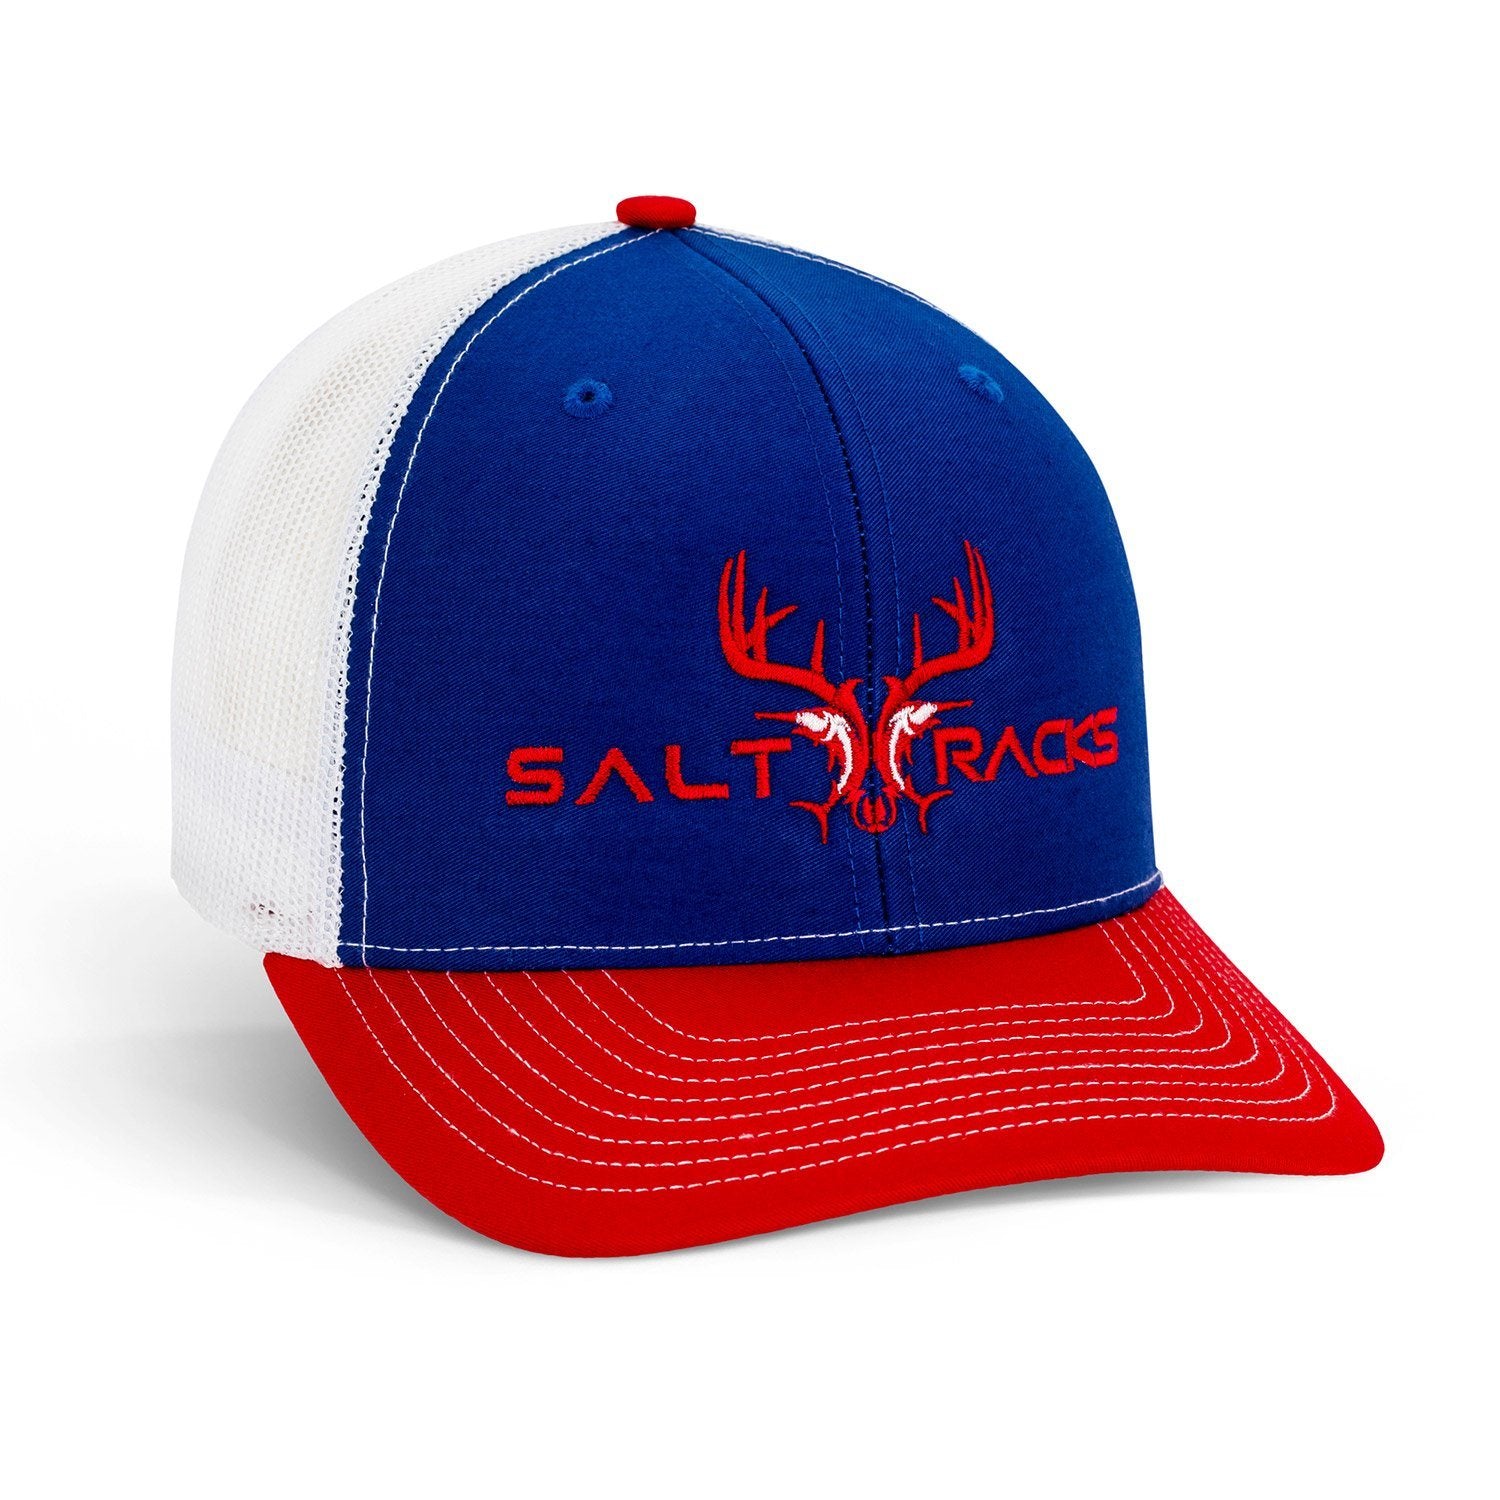 Saltracks – Cap Red/Blue/White